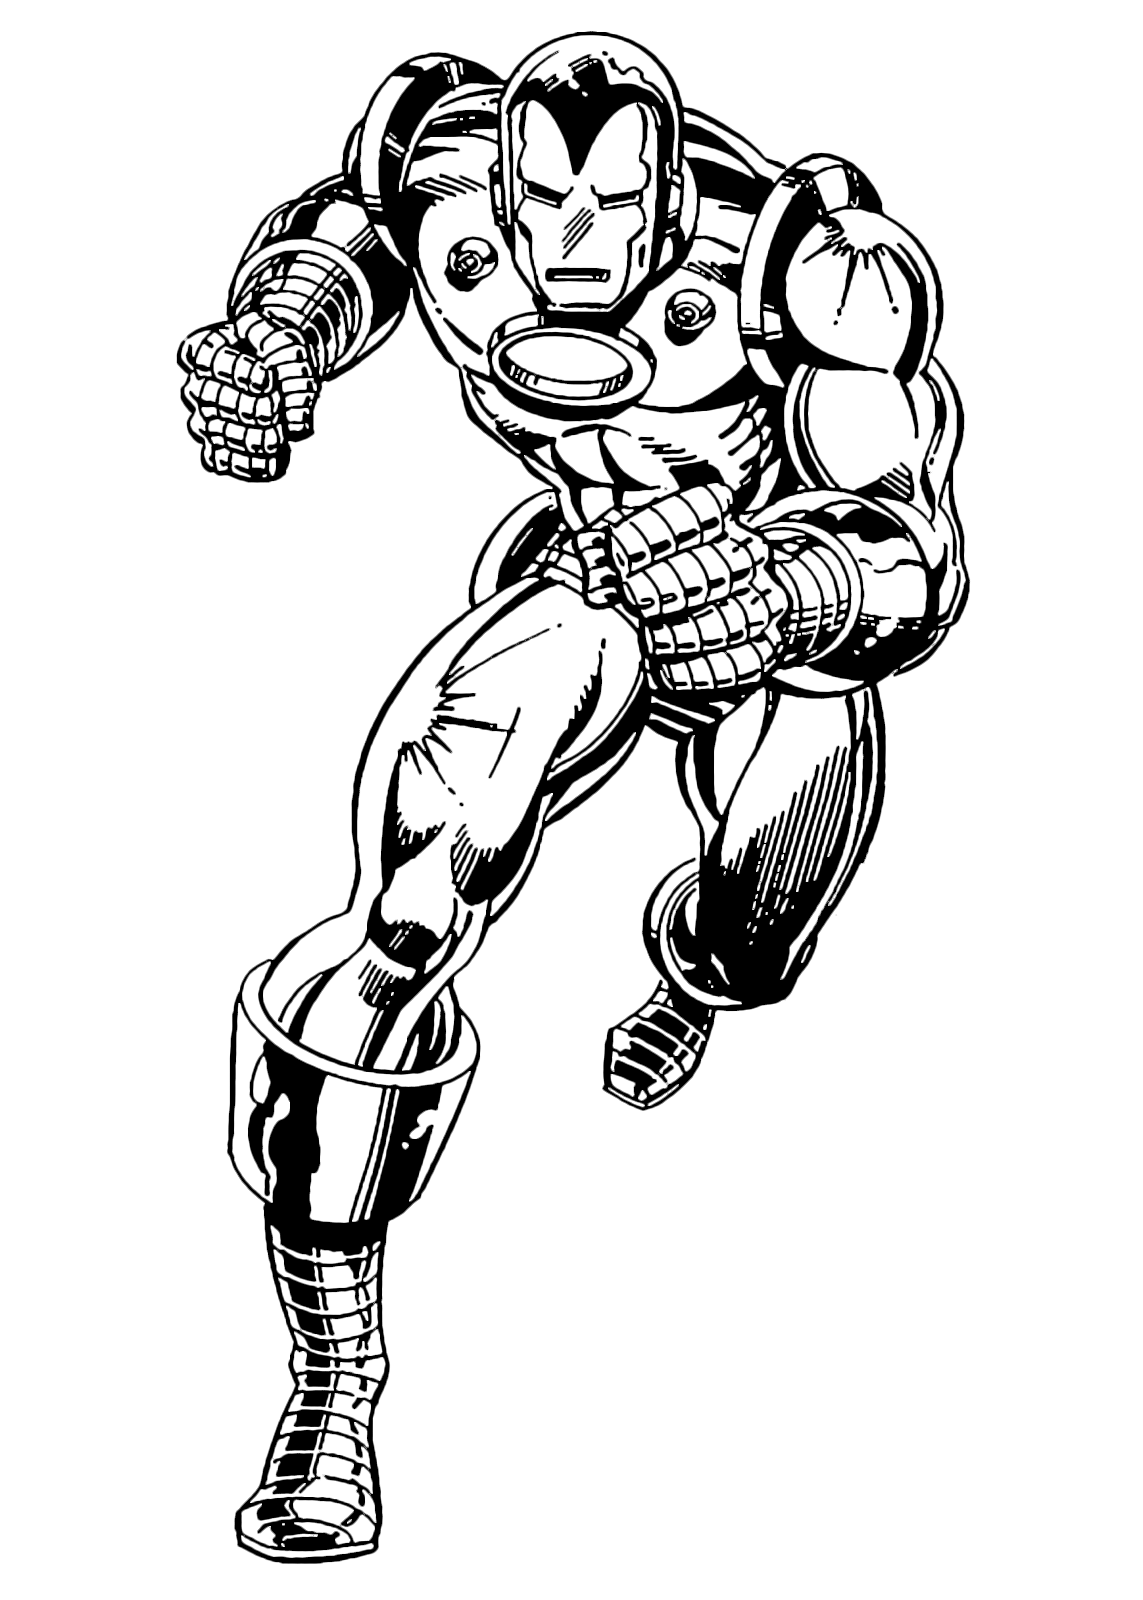 Divertiti a stampare e a colorare i disegni di Iron Man il supereroe fondatore degli Avengers Vivi con lui mille avventure in difesa del mondo